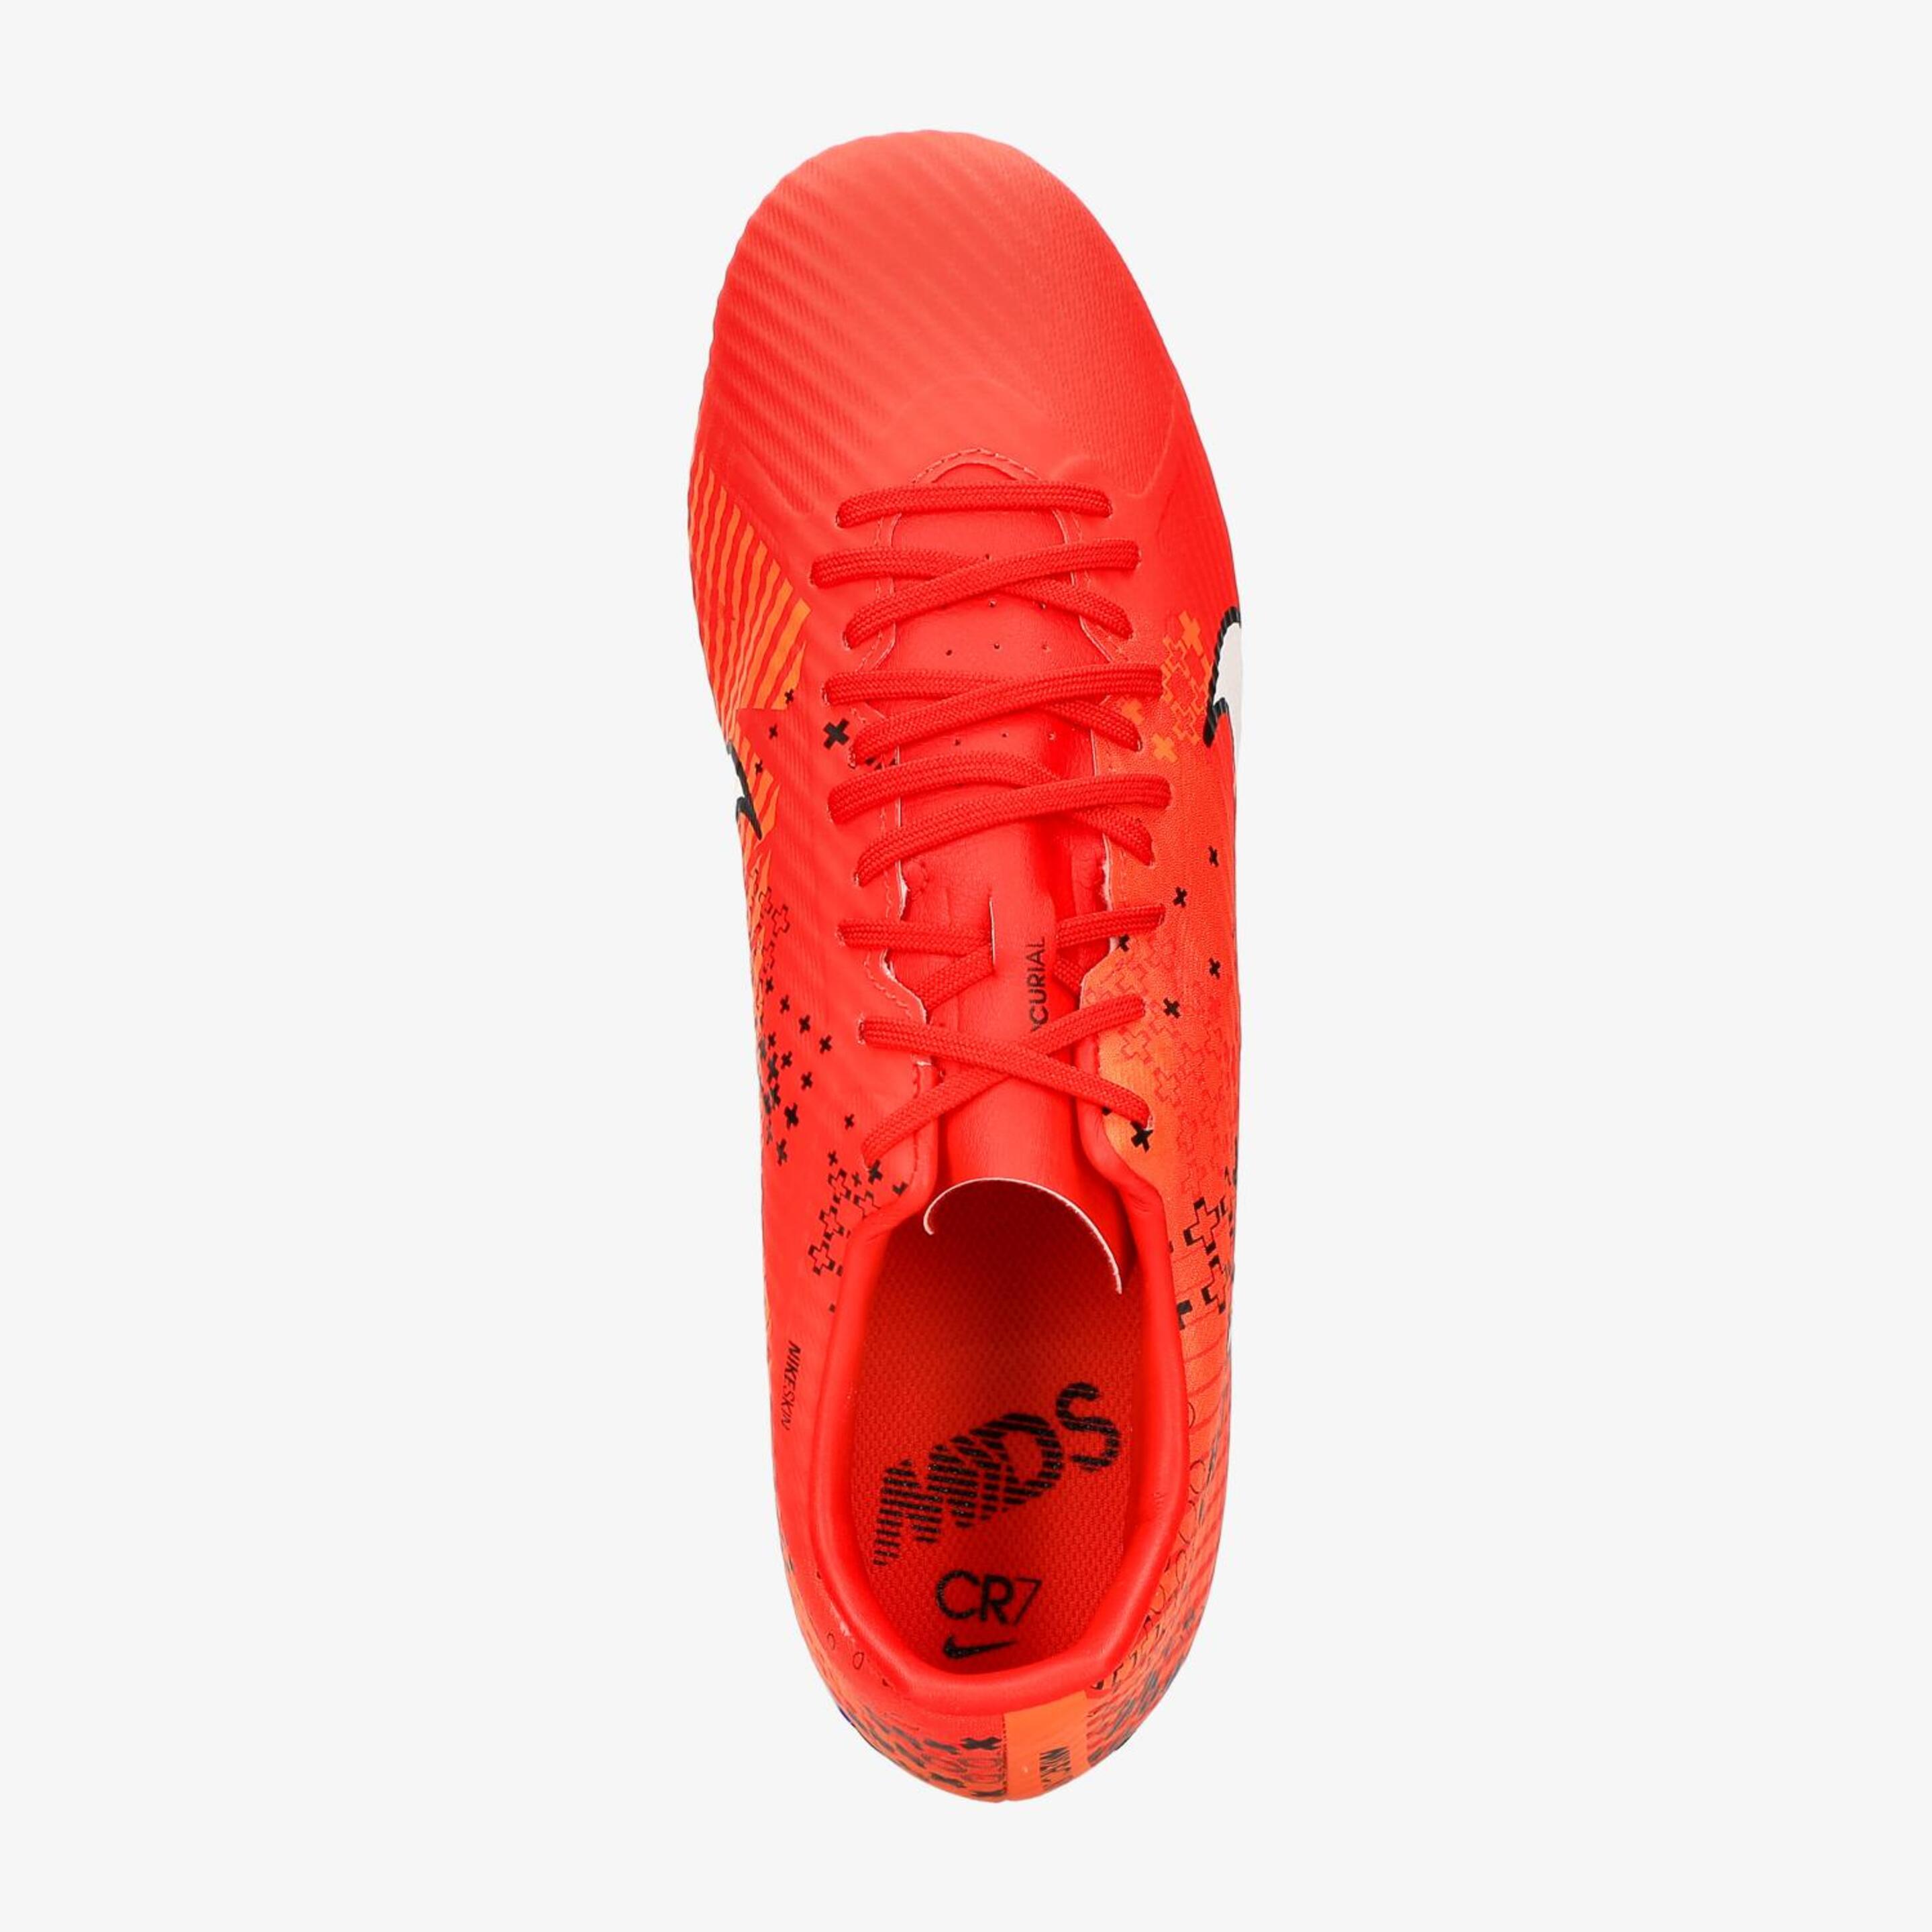 Nike Mercurial Vapor Academy MG - Rojo - Botas Fútbol